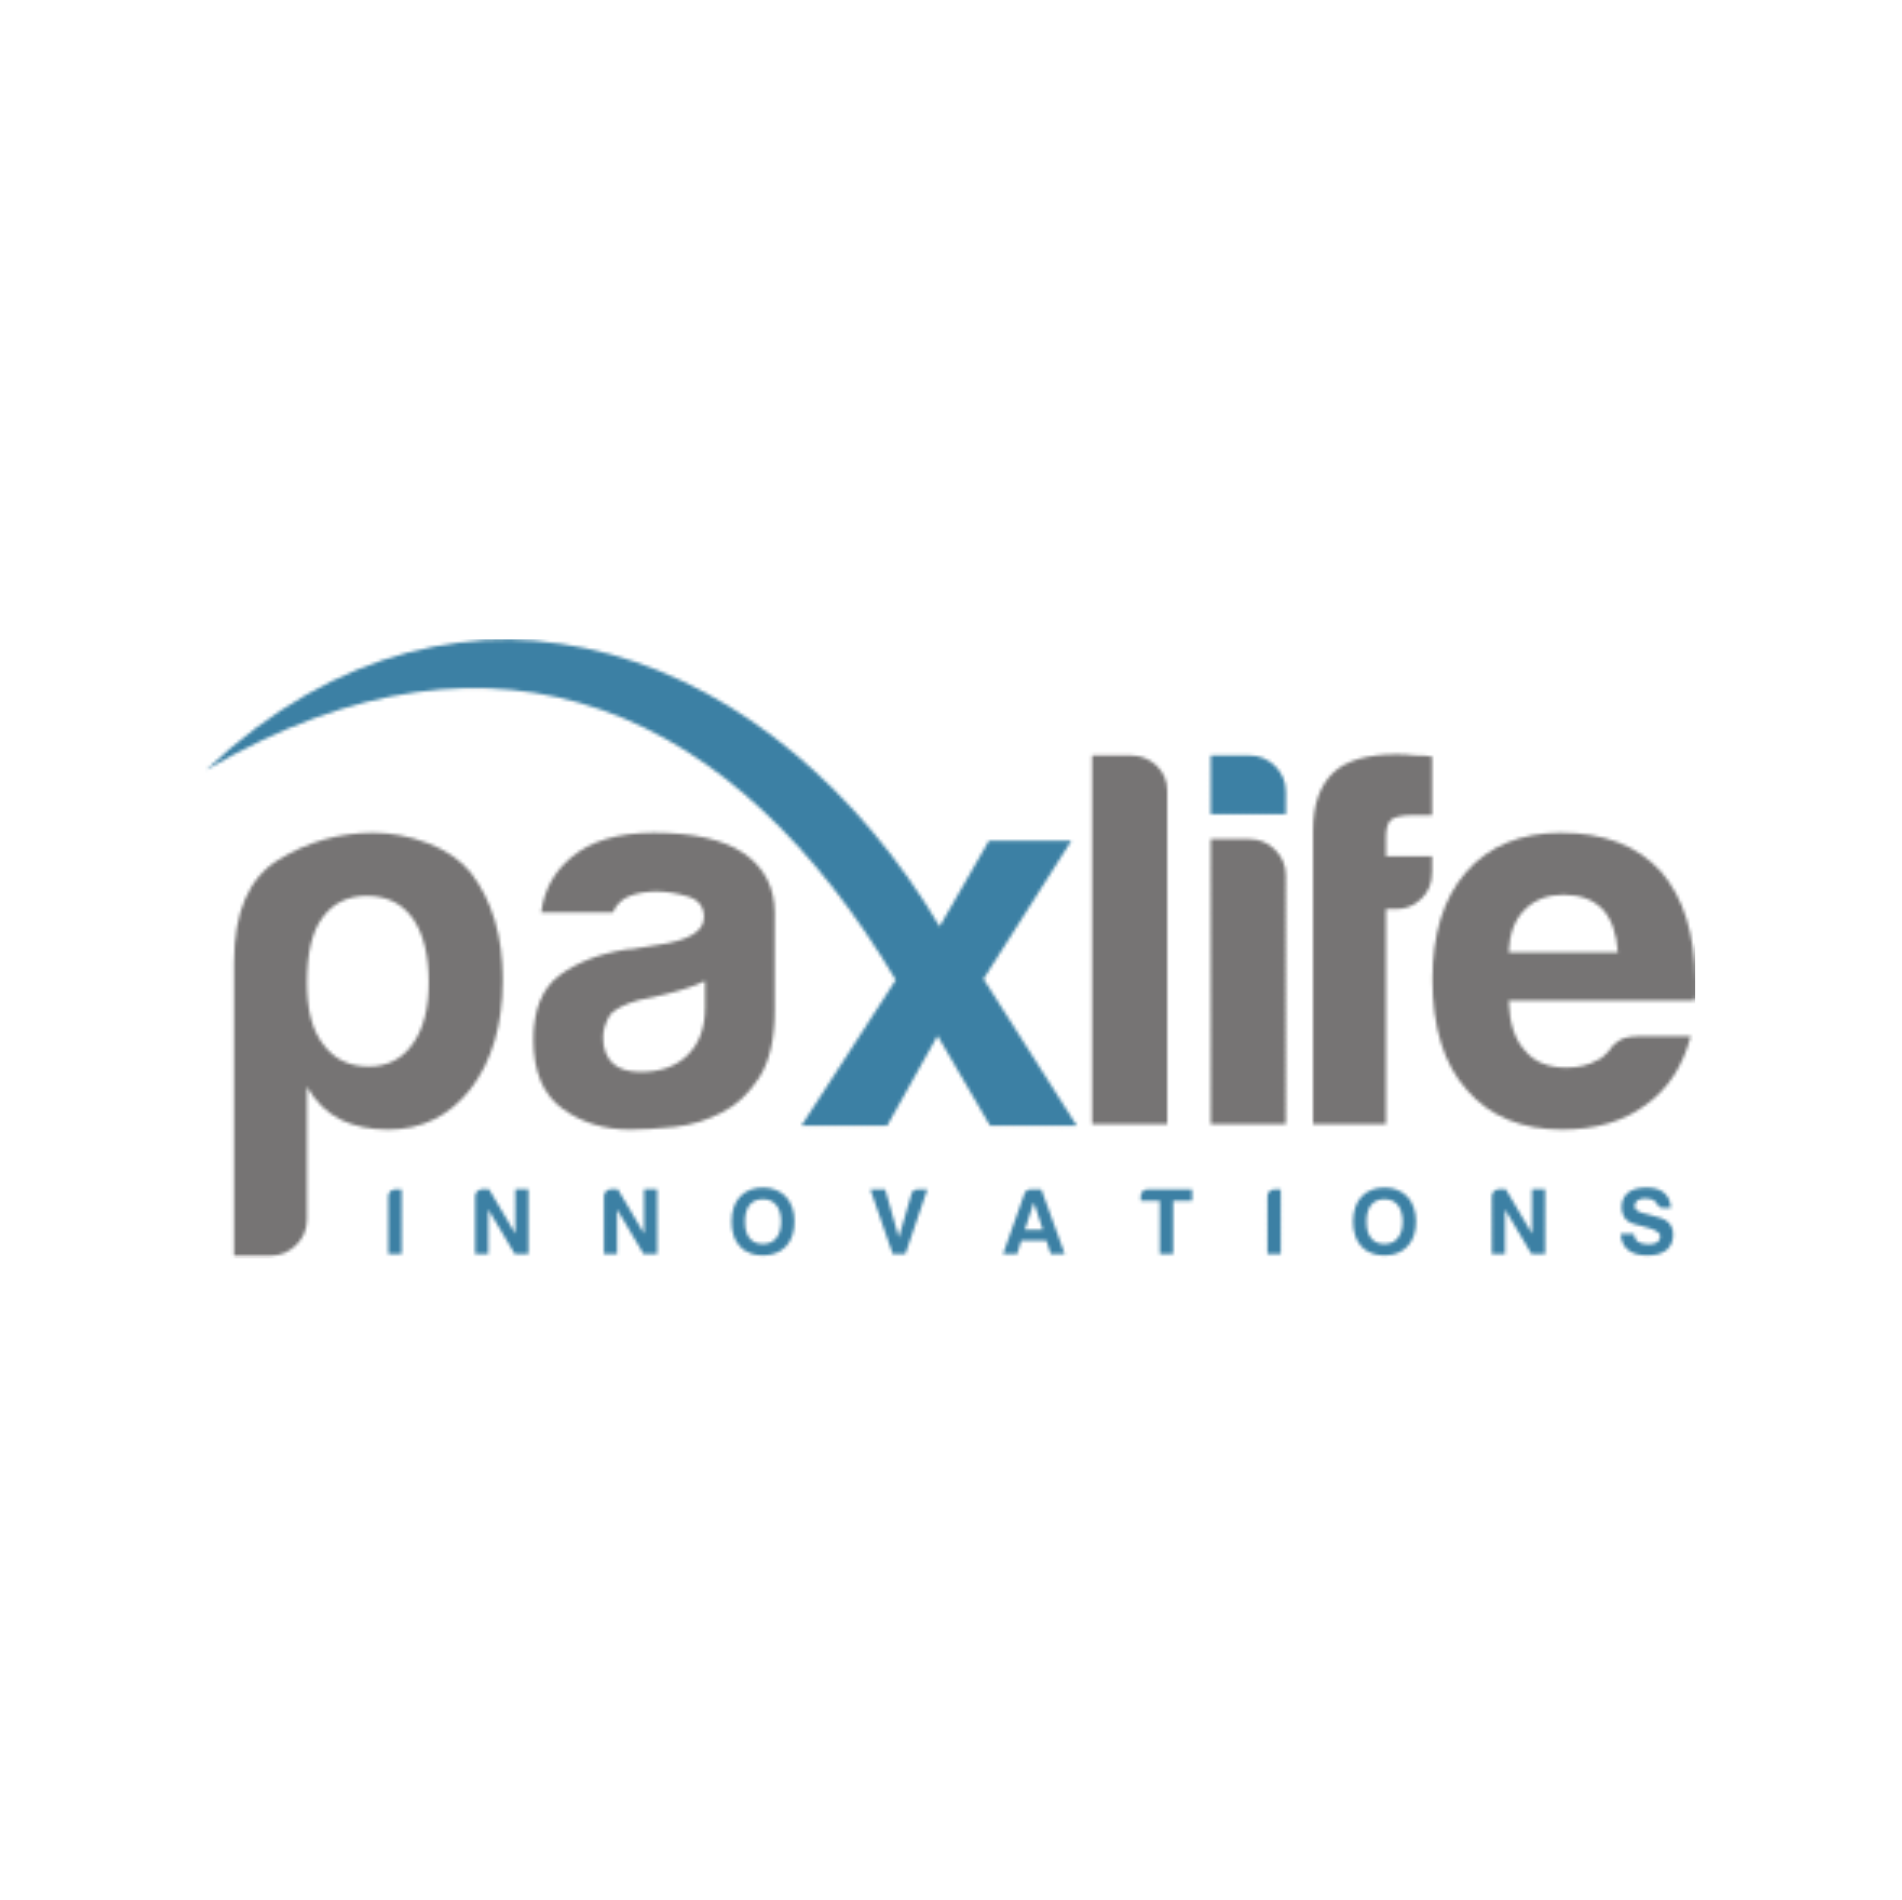 PaxLife Innovations Silver Sponsor of World Passenger Festival